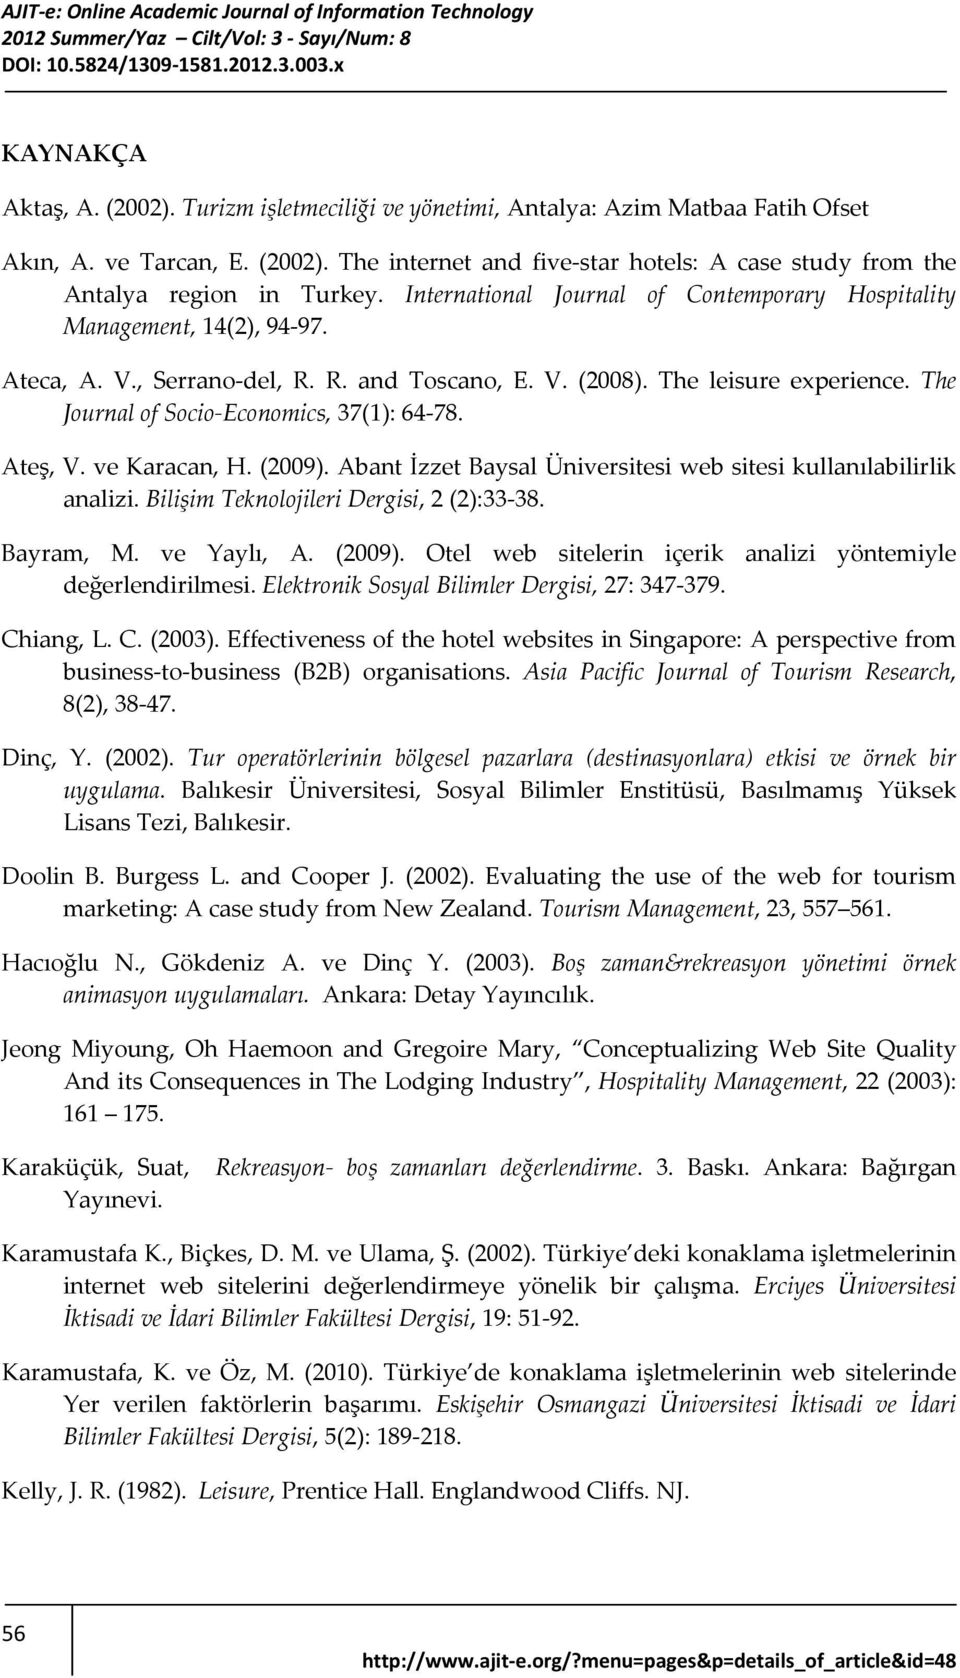 The Journal of Socio Economics, 37(1): 64-78. Ateş, V. ve Karacan, H. (2009). Abant İzzet Baysal Üniversitesi web sitesi kullanılabilirlik analizi. Bilişim Teknolojileri Dergisi, 2 (2):33-38.